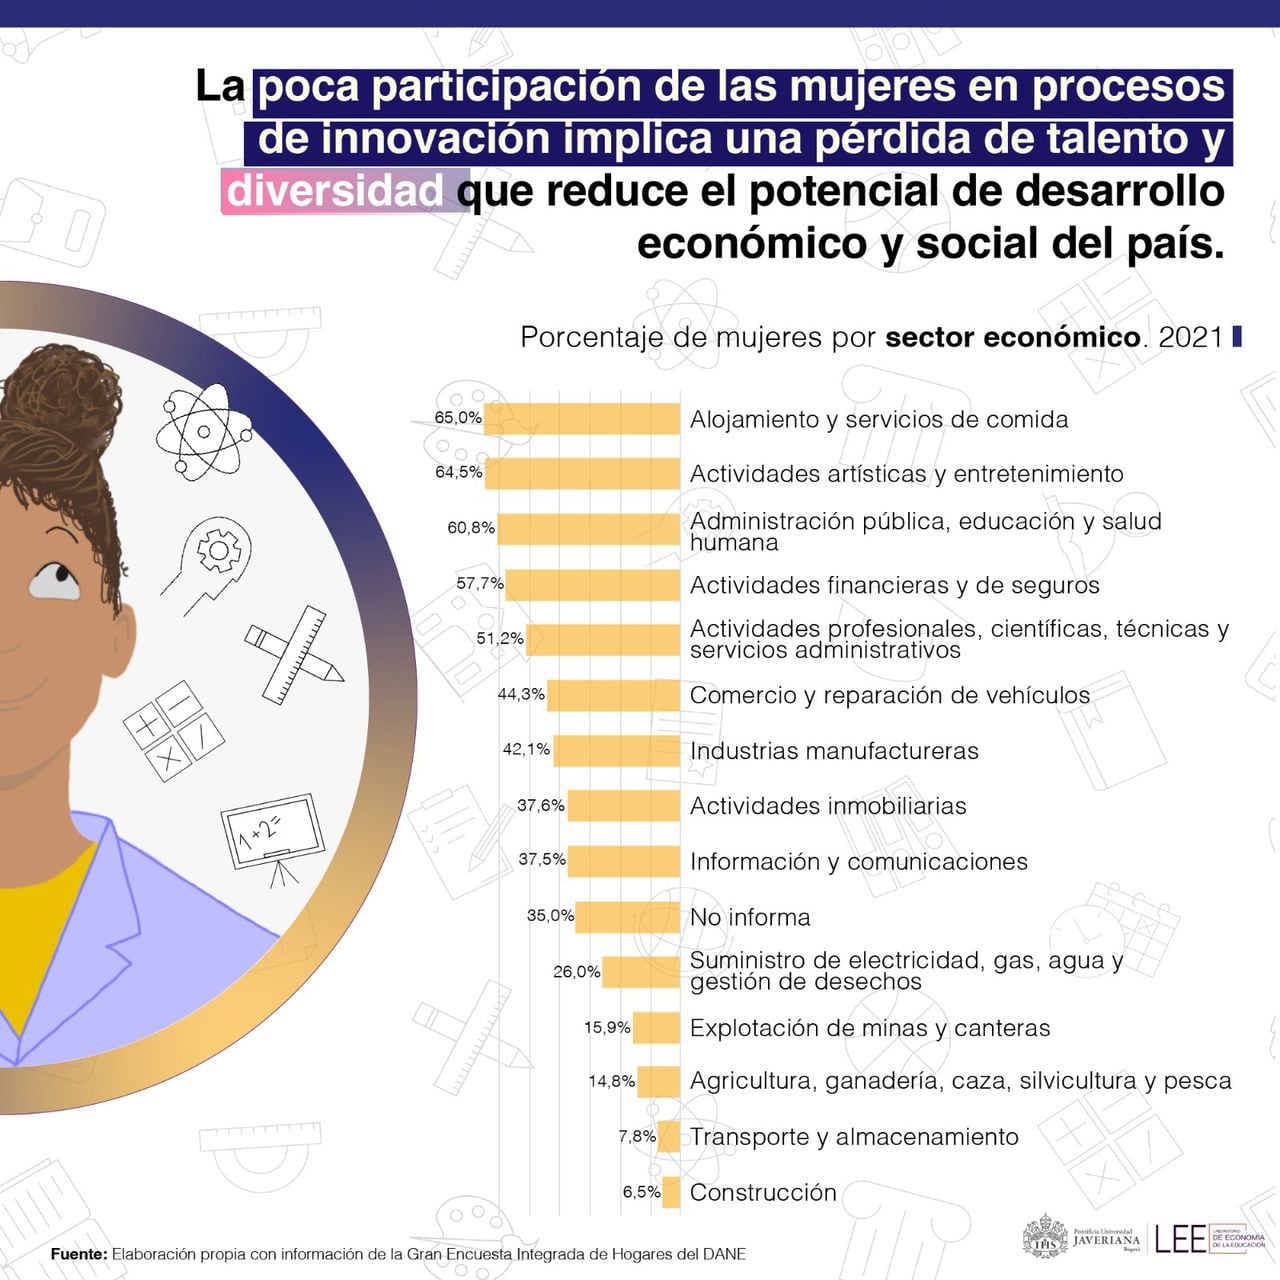 Esta infografía suministrada por el Laboratorio de Economía de la Educación de la Javeriana, destaca los sectores donde más se encuentran laborando las mujeres. Allí se evidencia que en lo relacionado con  Información y Telecomunicaciones, sólo 37% son mujeres.